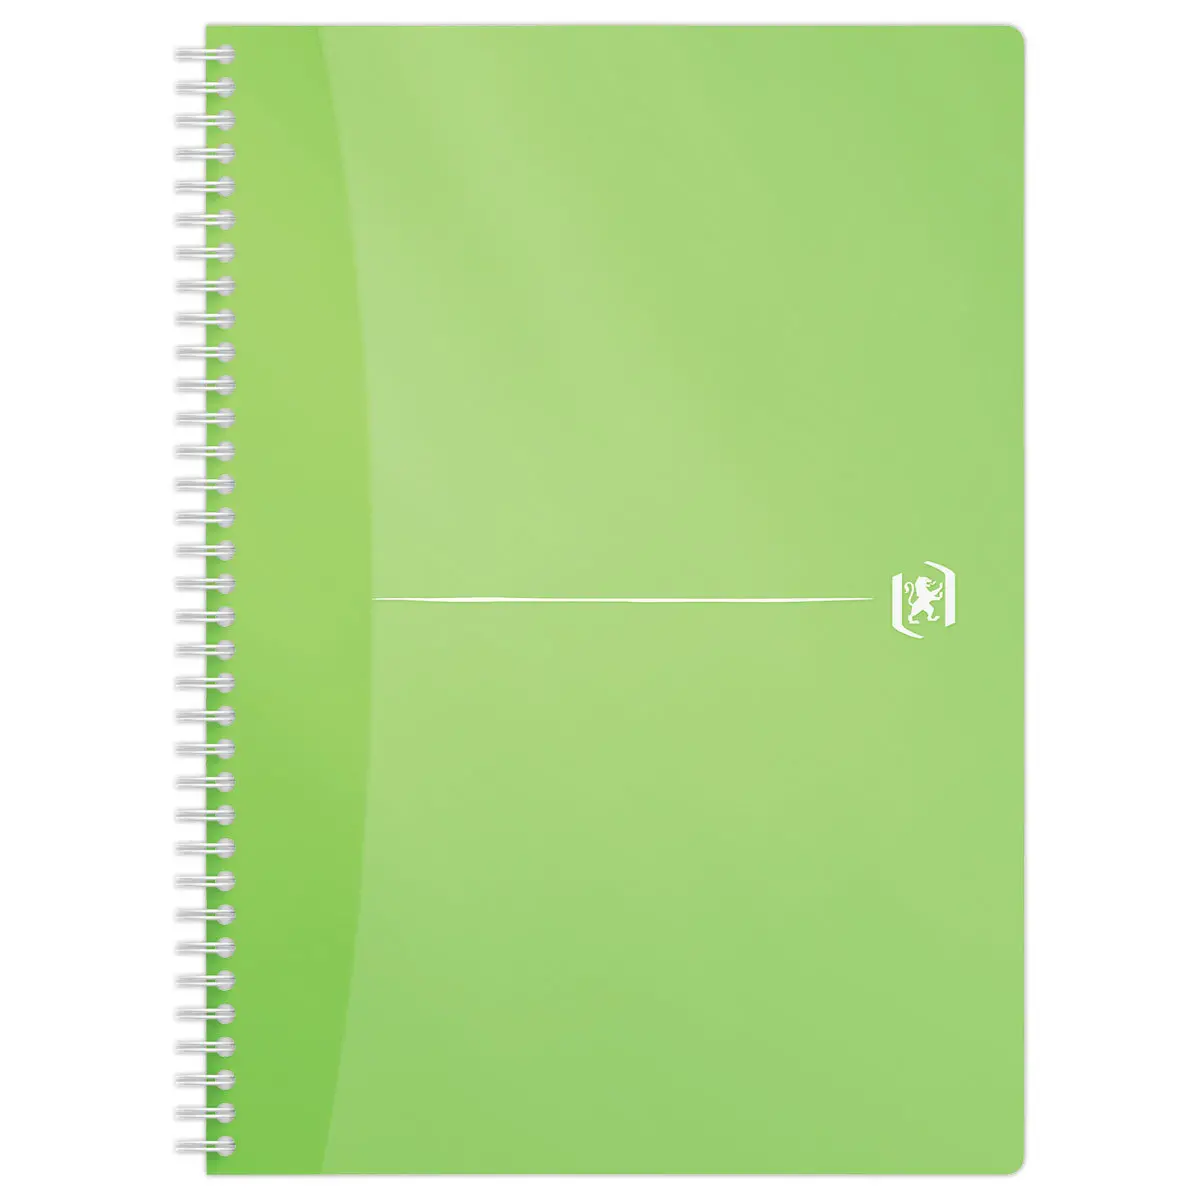 1 cahier à spirales polypro - Format A5 14.8 x 21 cm - Office - Oxford -  180 pages lignée - Coloris assortis - Copies - Feuilles